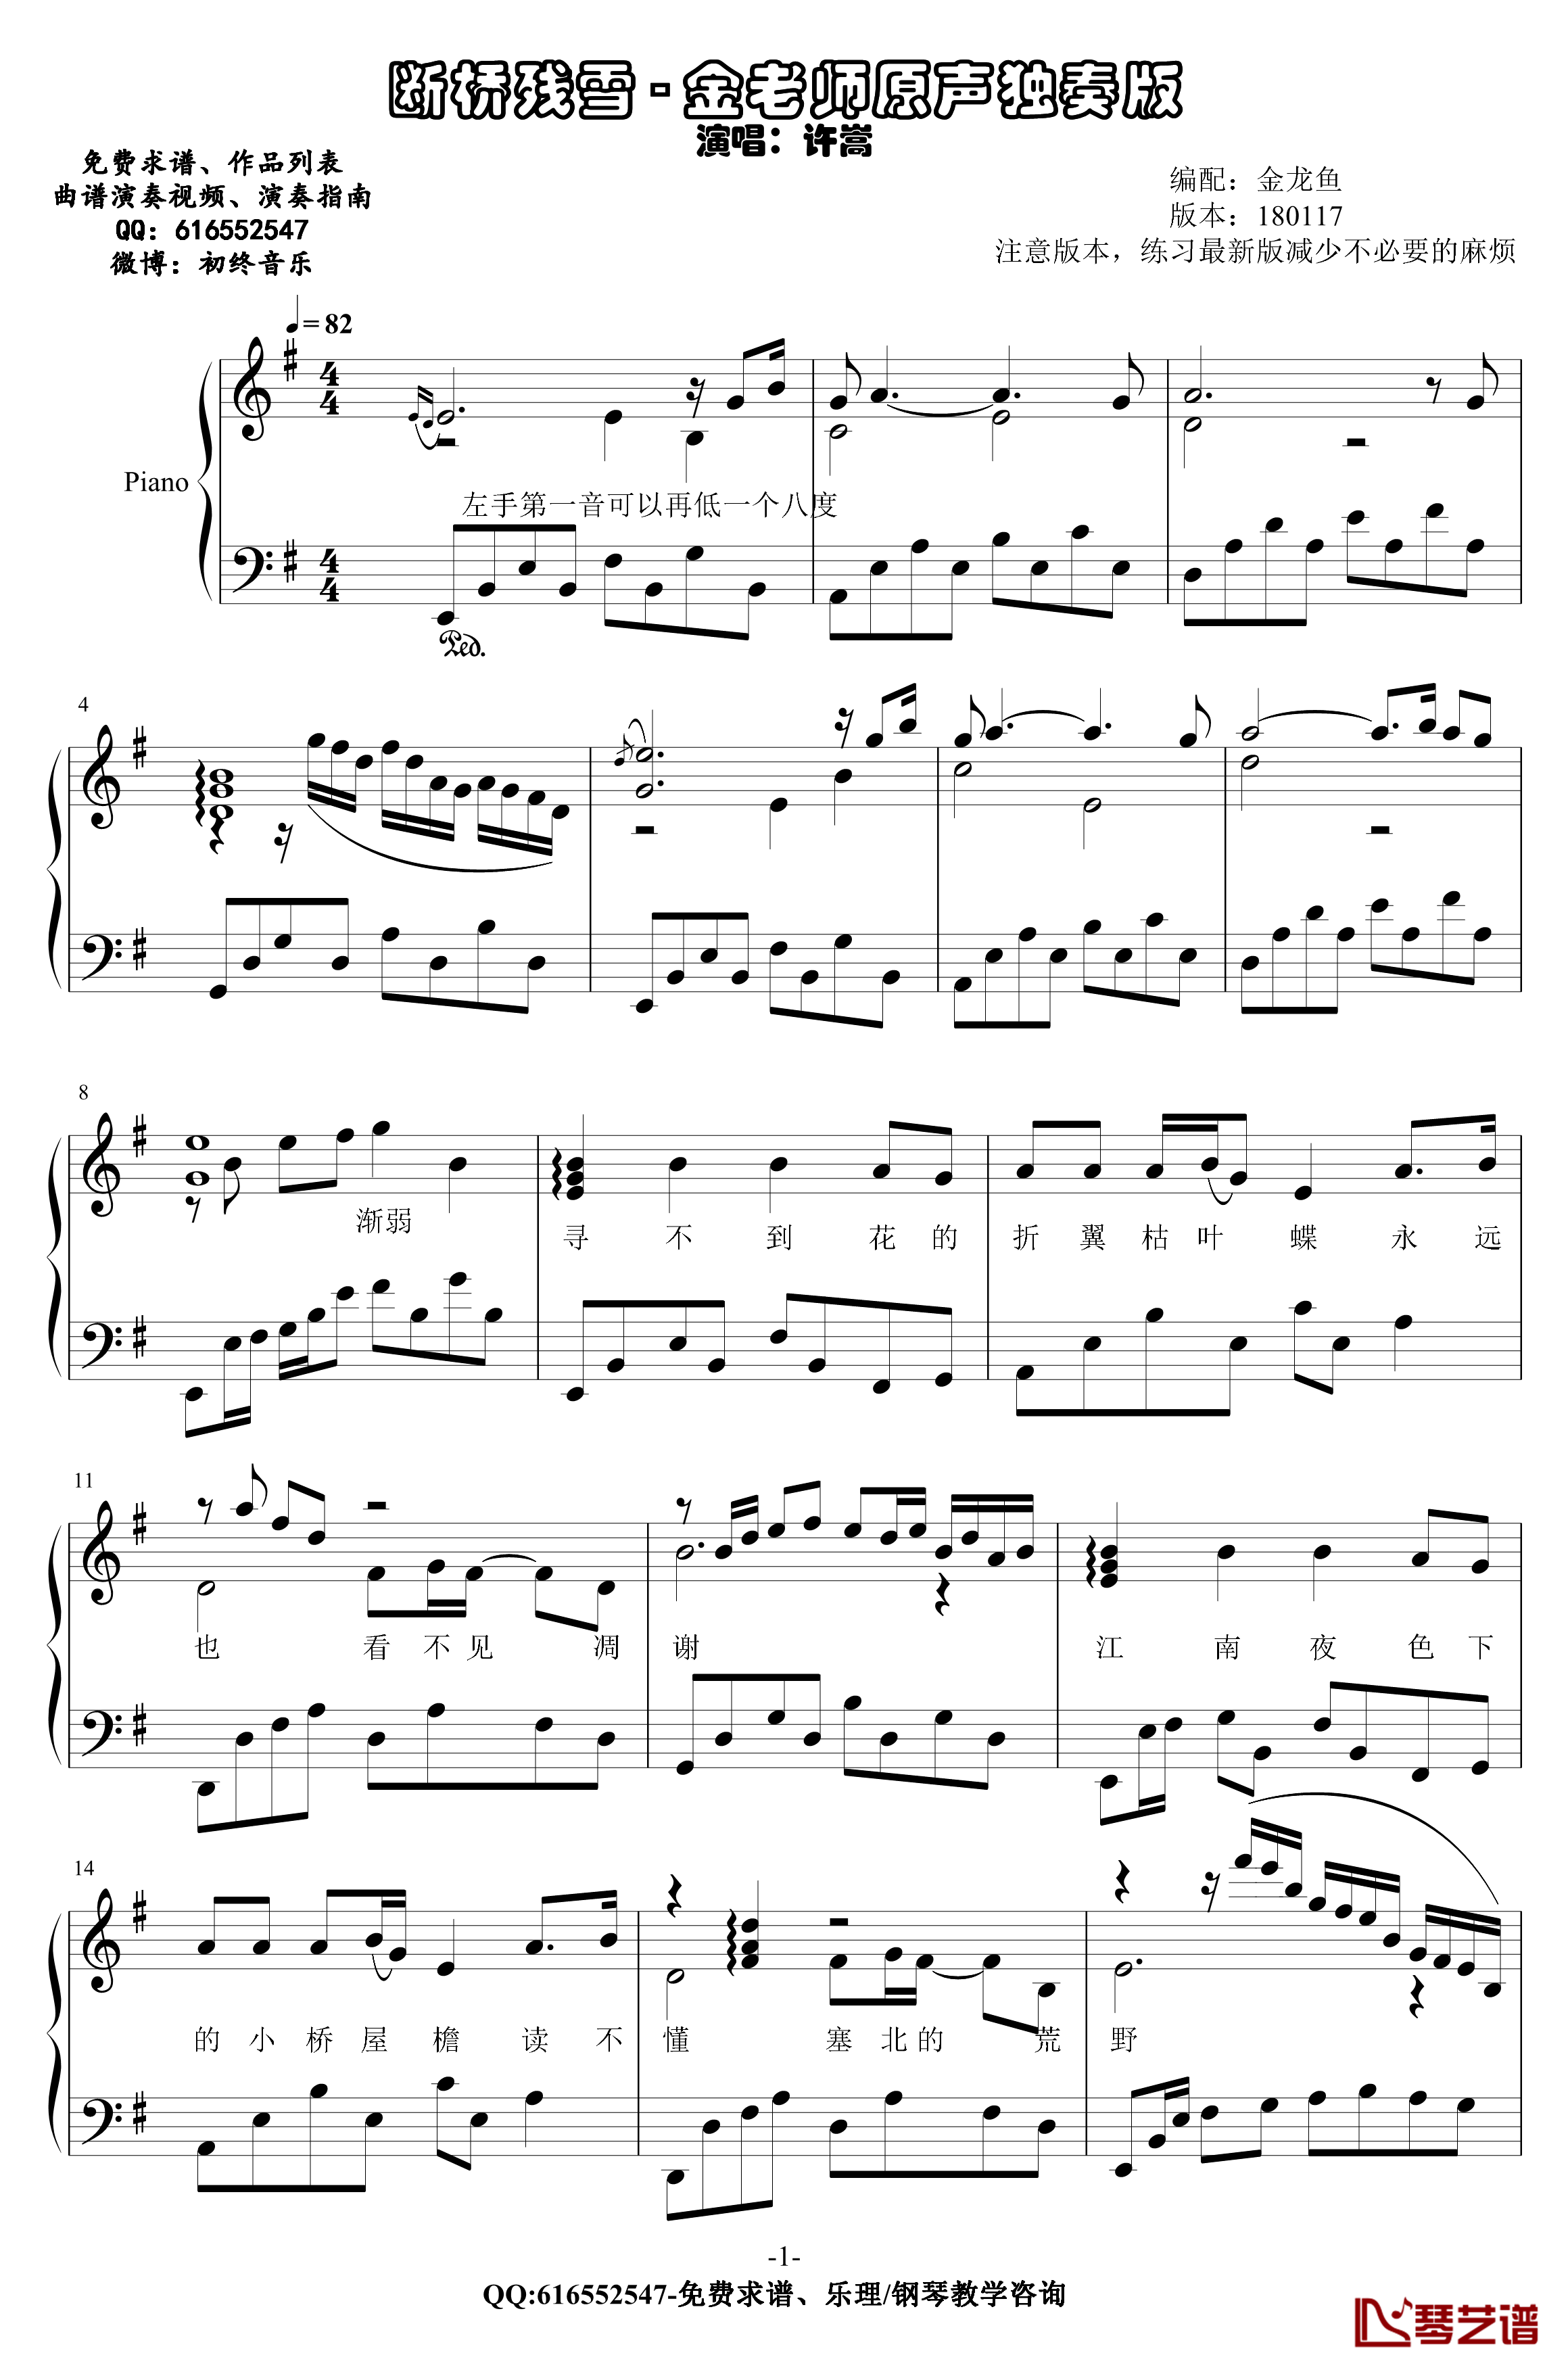 断桥残雪钢琴谱-金老师原声独奏版180117-许嵩1